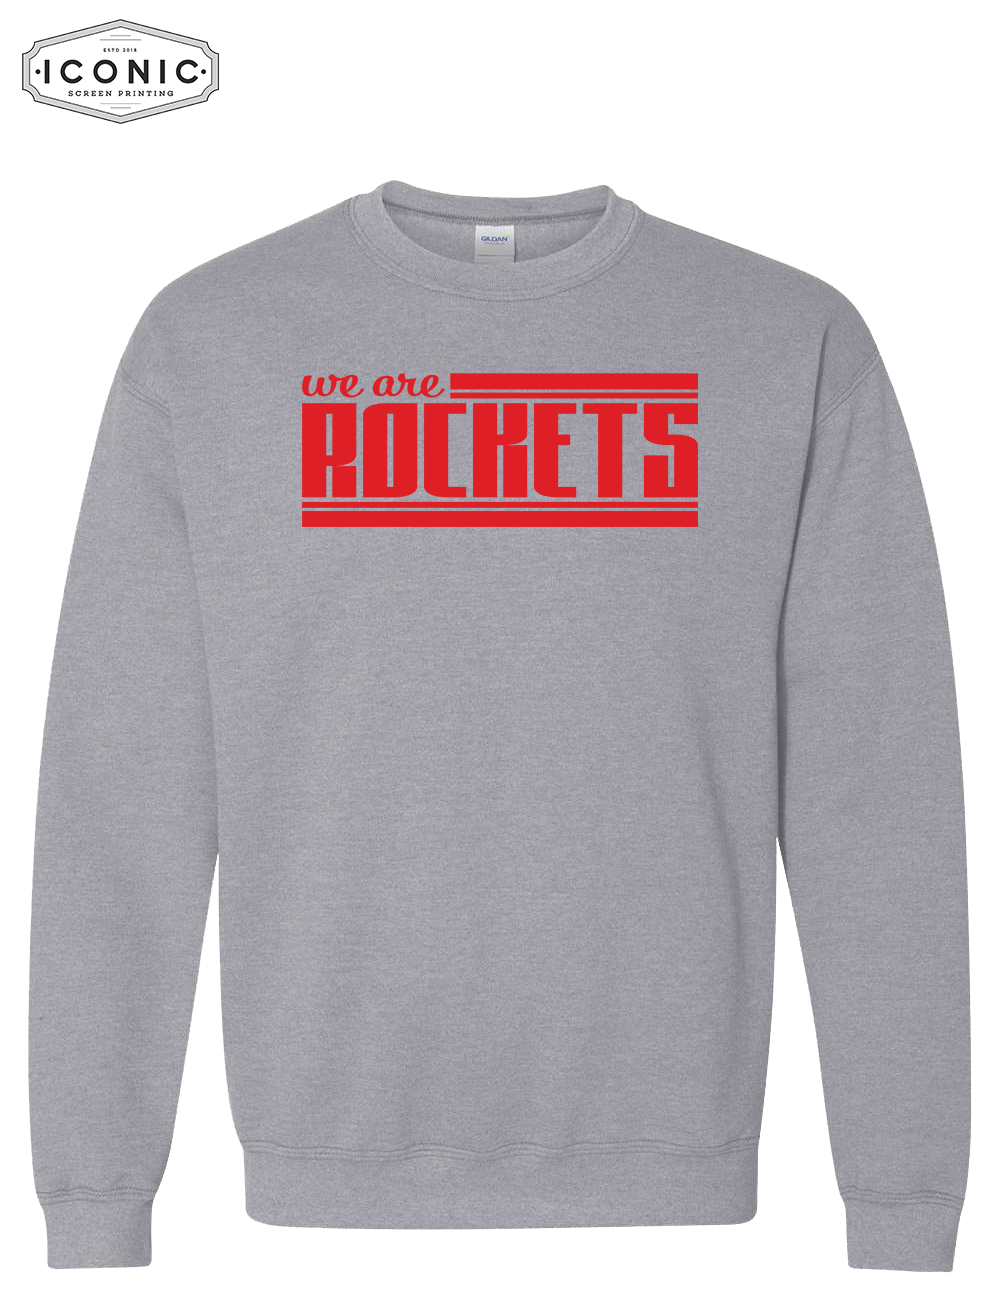 We Are Rockets - Heavy Blend Sweatshirt